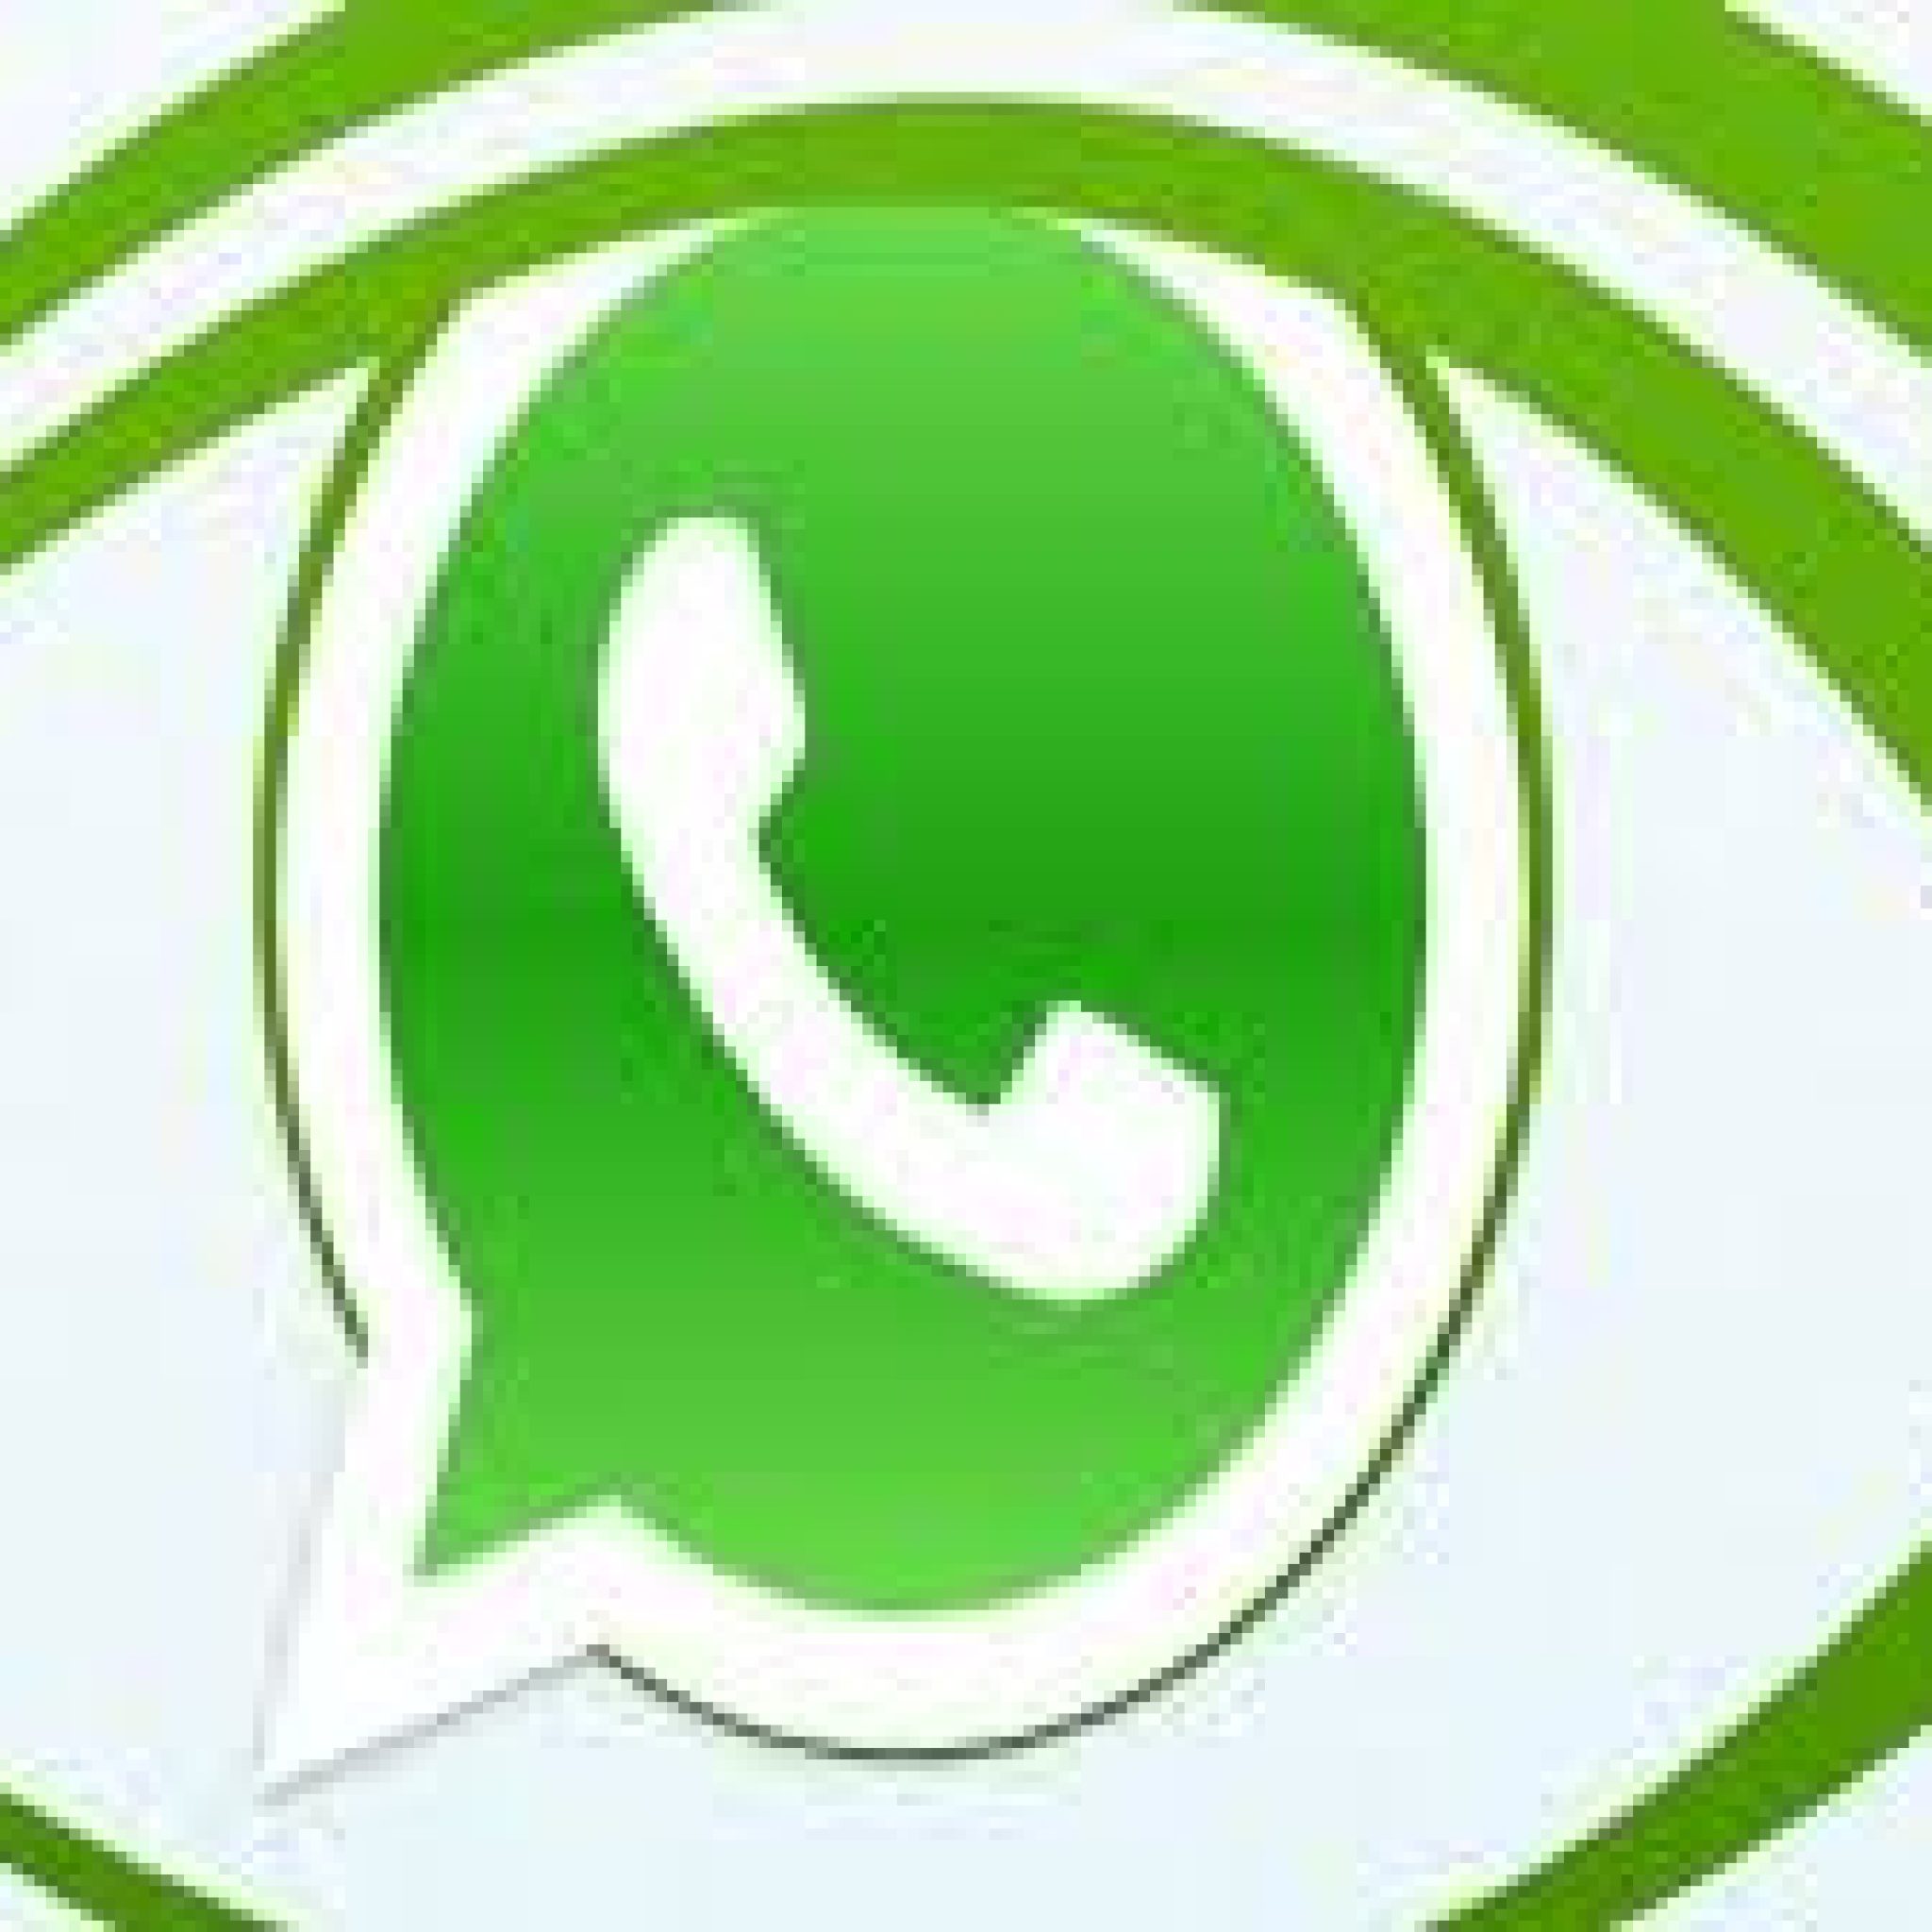 El Peligro De Los Estados Del Whatsapp